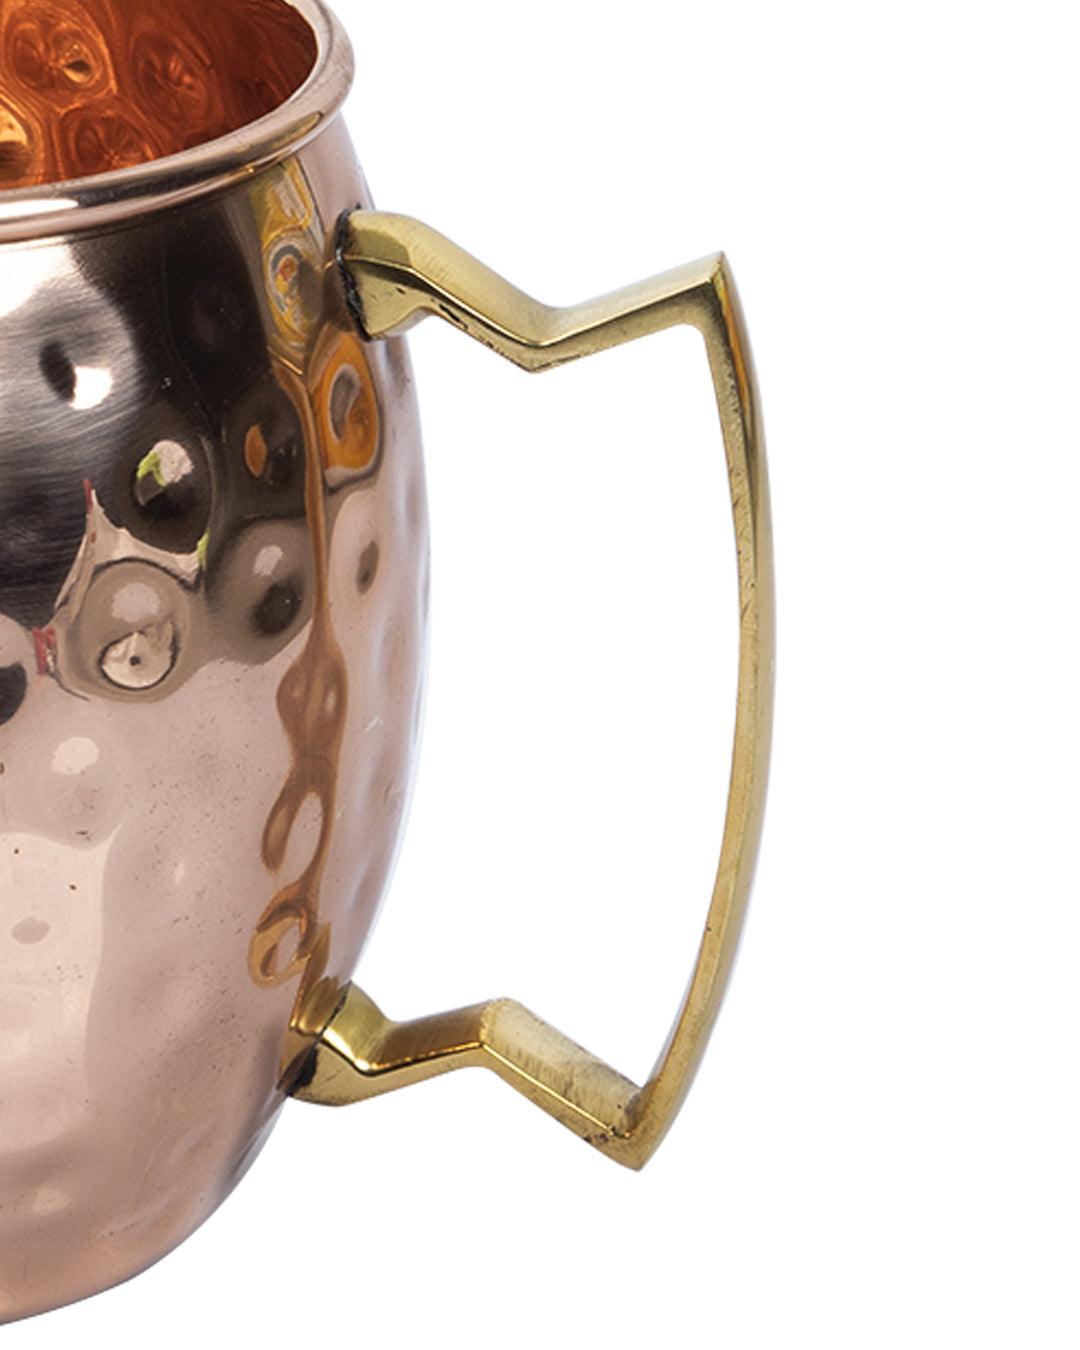 VON CASA Copper Hammered Moscow Mule Mugs with Handle (Set Of 2, 500 mL) - VON CASA